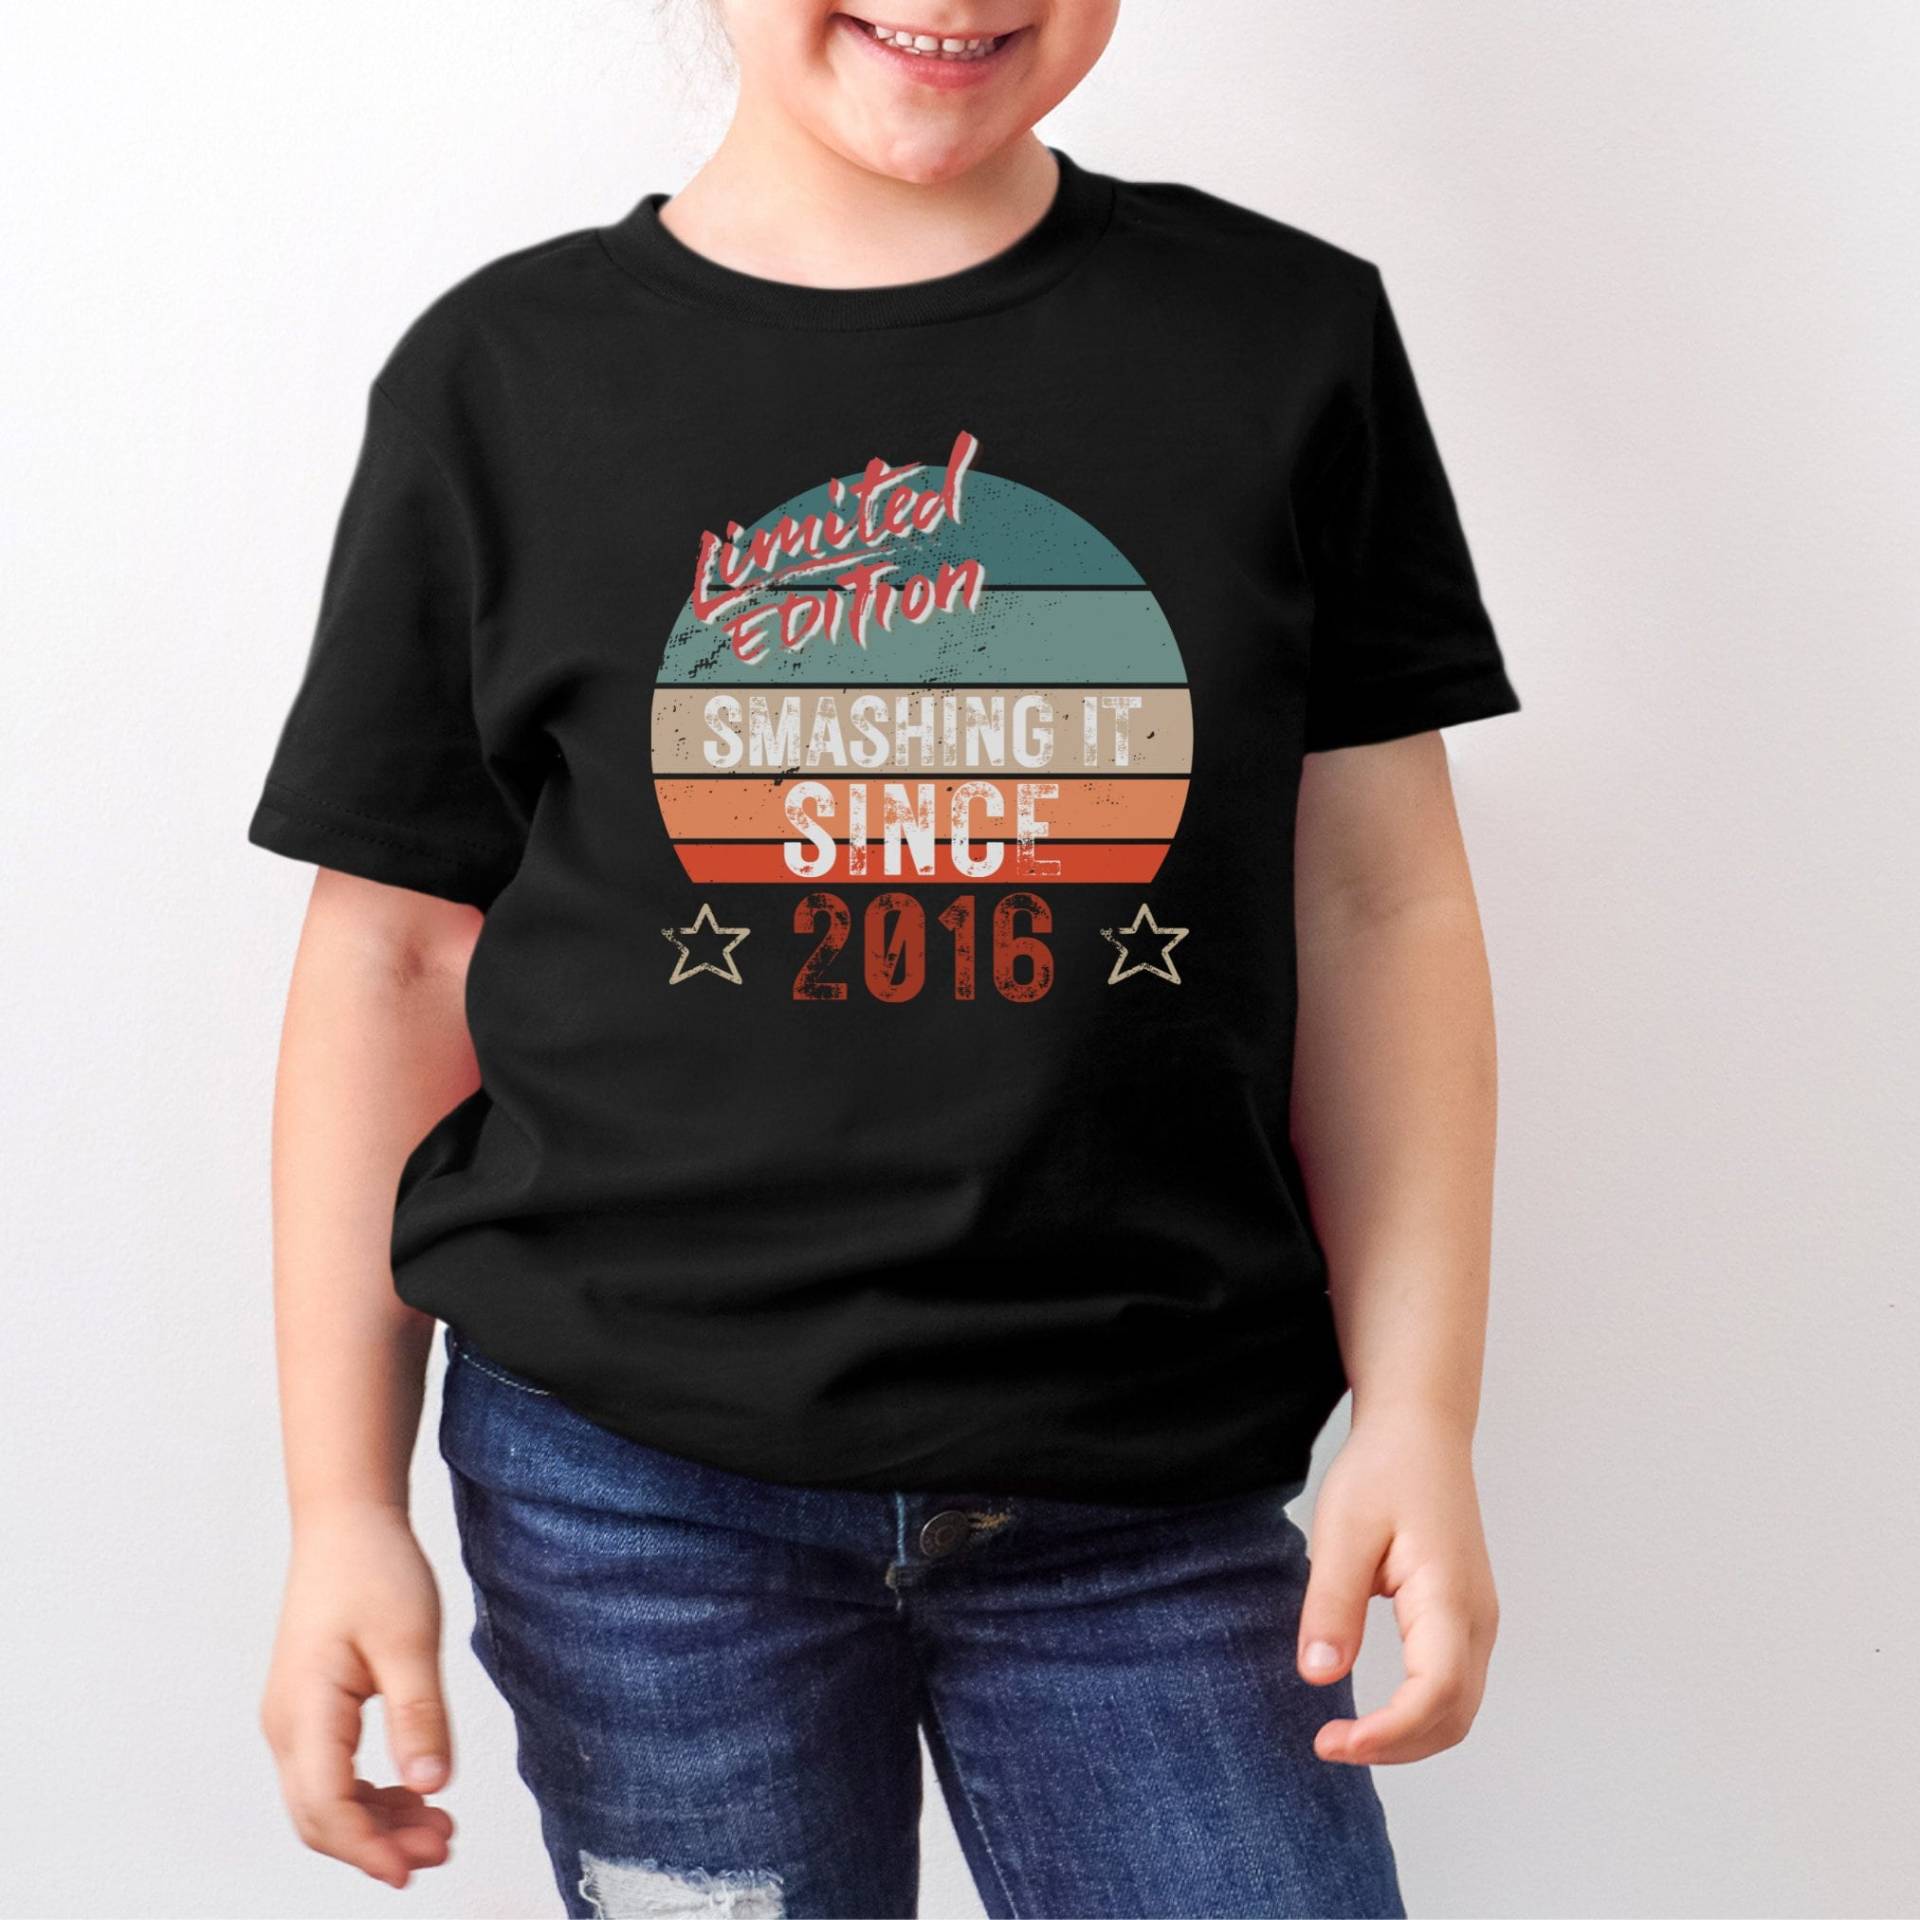 7. Geburtstagsgeschenk Geburtstag T Shirt Smashing It Since 2016 Limited Edition Shirts Für Jungen Mädchen Kinder von LJCustomTeesDesign